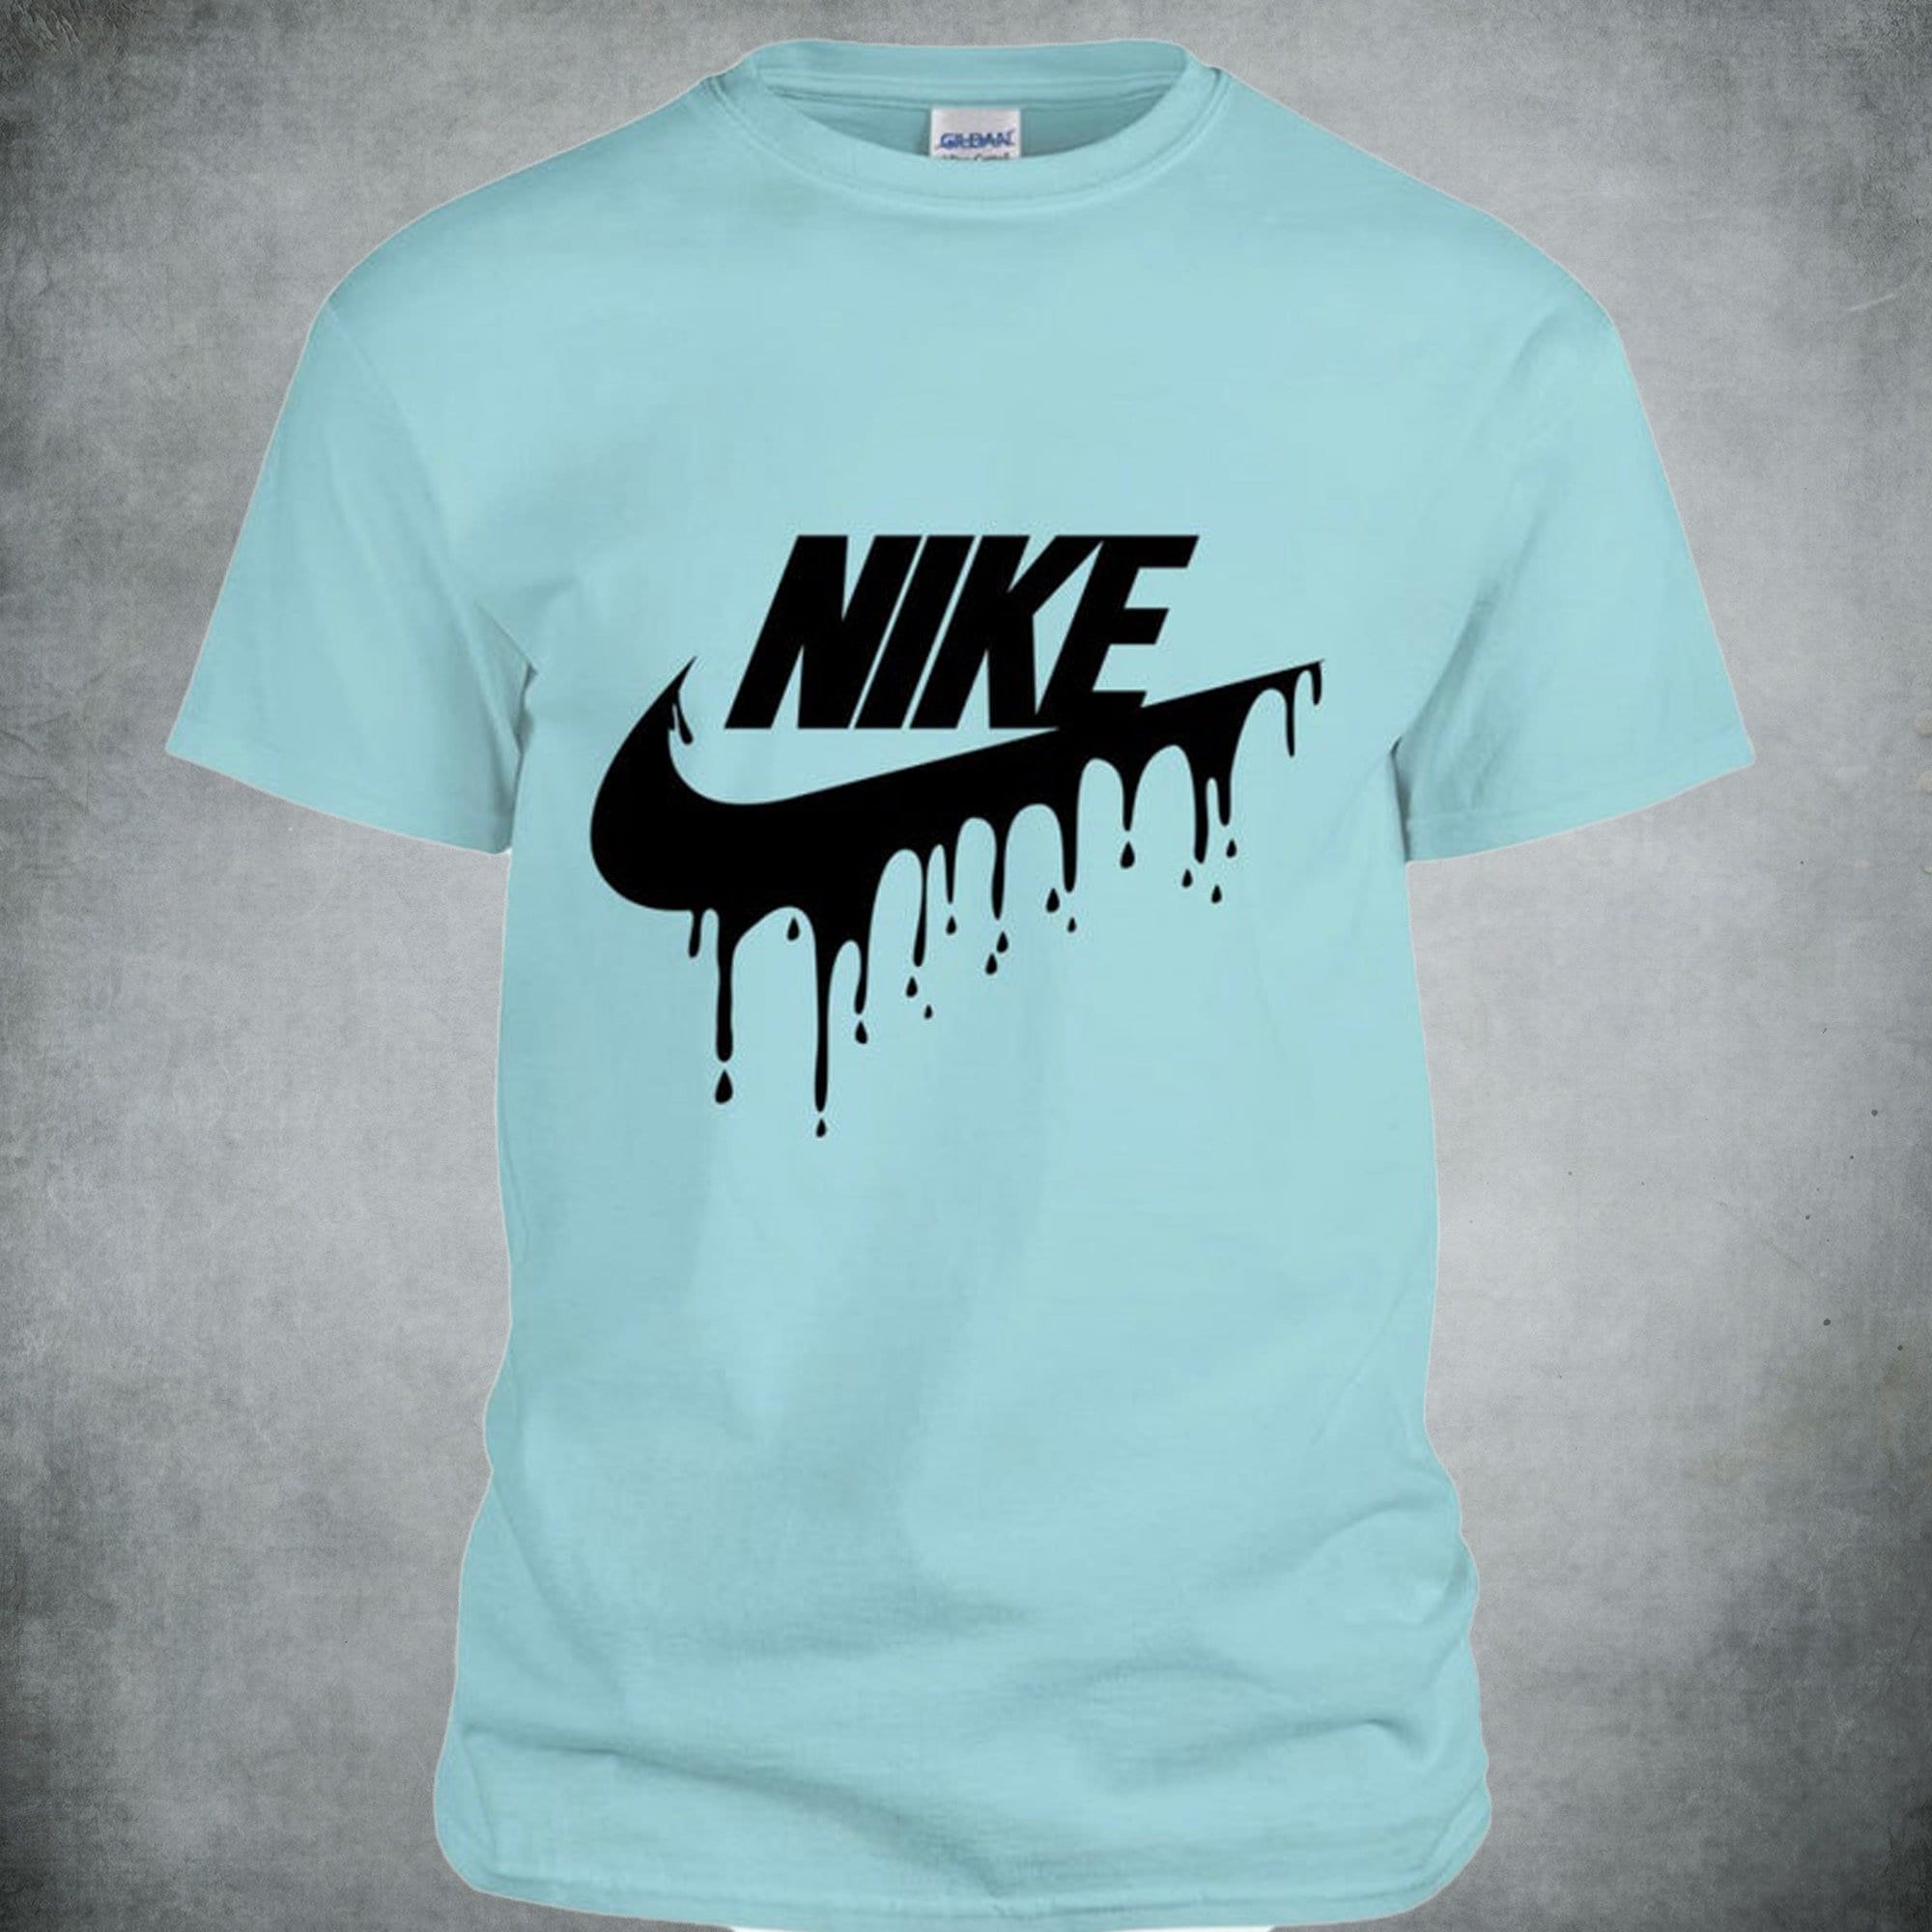 Nike Drip T-Shirt Nike T-shirt Nike Custom T-shirt Nike | Etsy